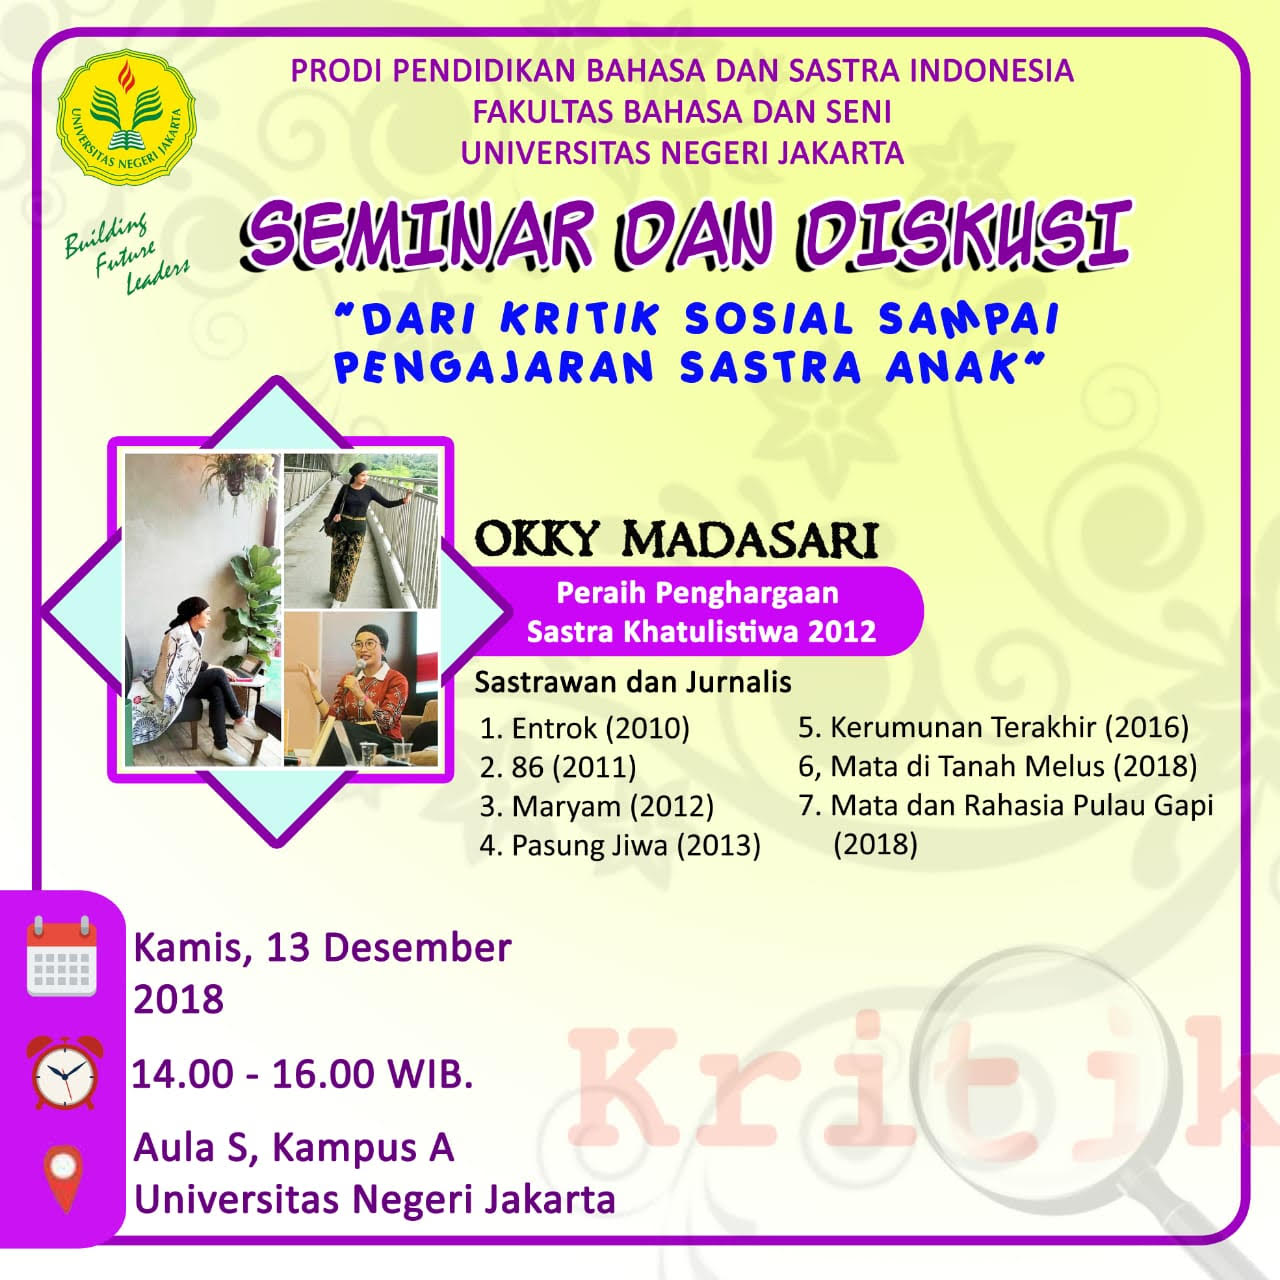 Seminar dan Diskusi tentang Pengajaran Sastra Anak Bersama Okky Madasari